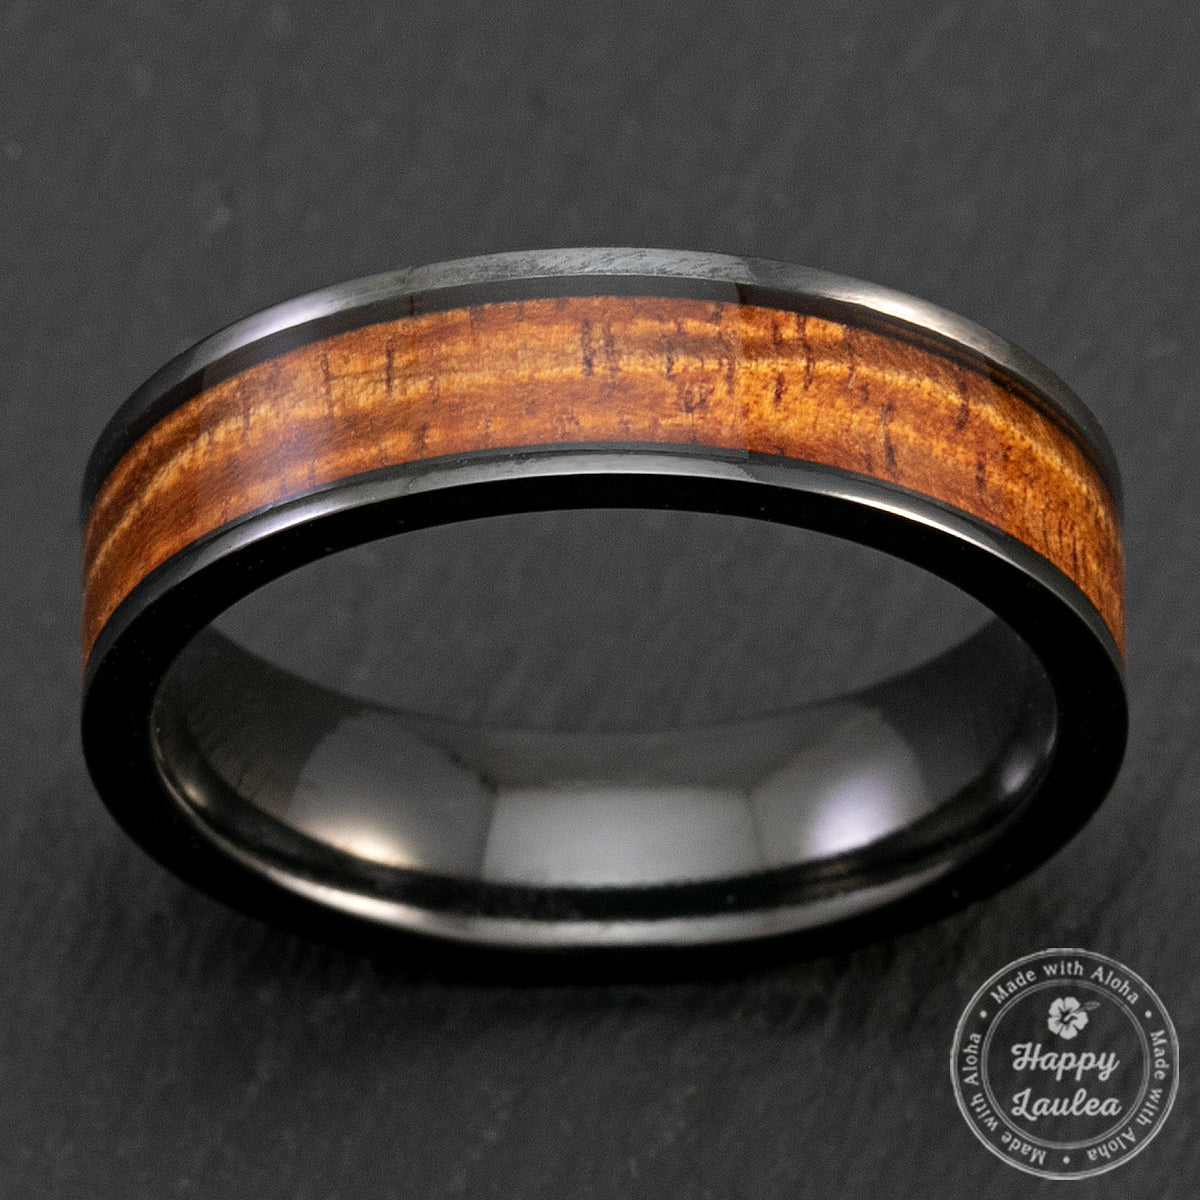 Black Zirconium 6mm Ring with Hawaiian Koa Wood Inlay - Flat Shape, Comfort Fitment